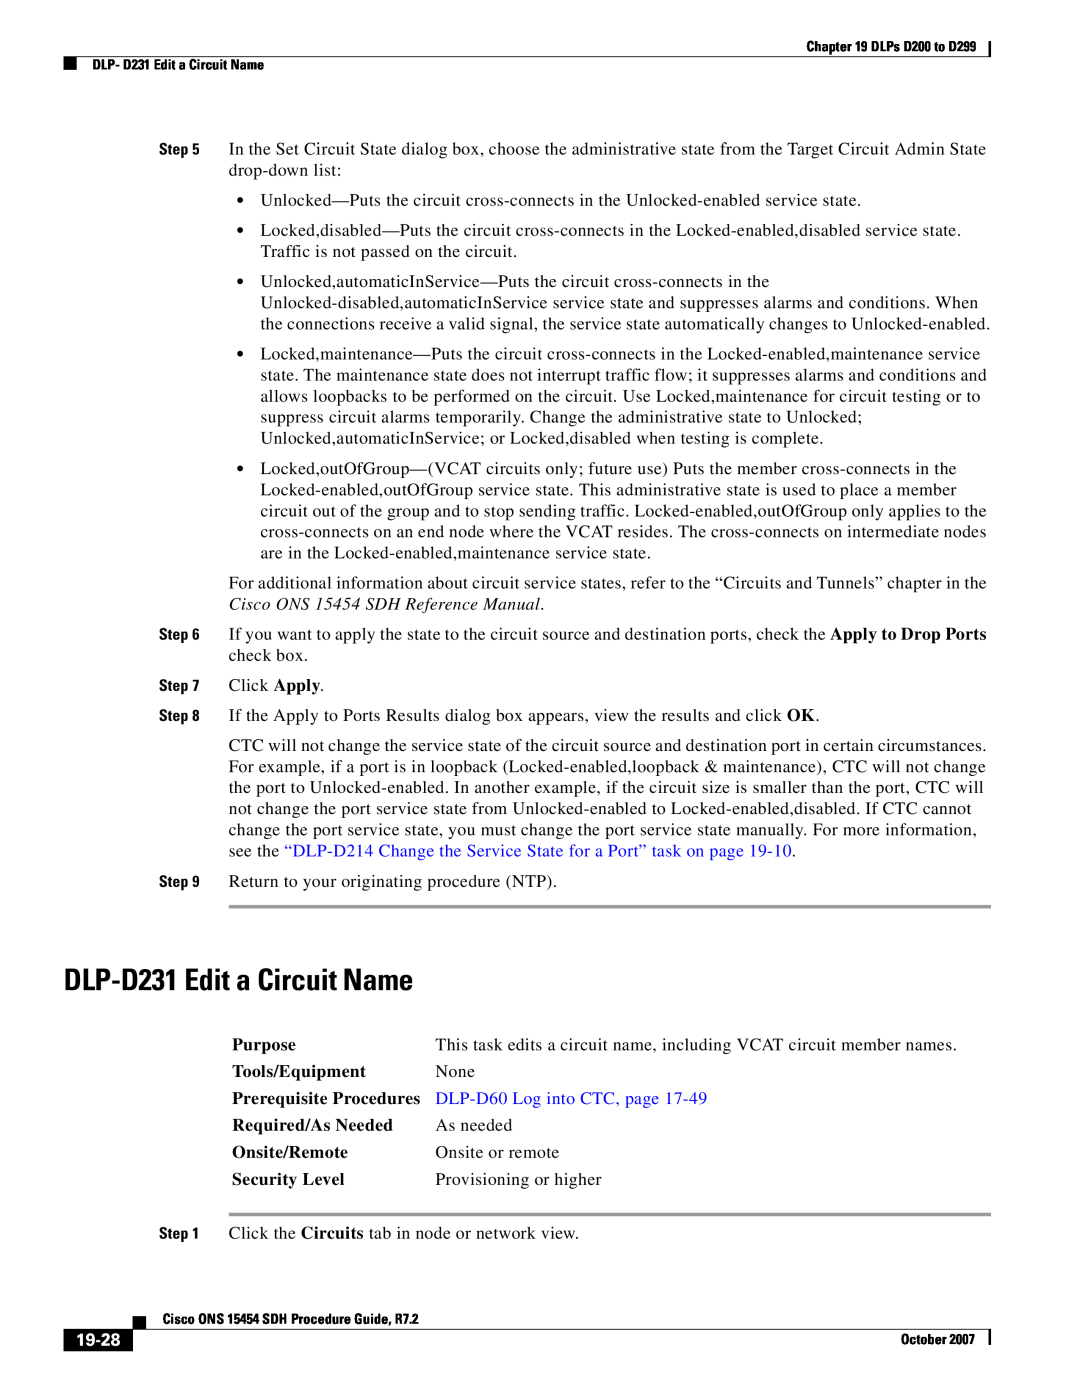 Cisco Systems D200 manual DLP-D231 Edit a Circuit Name, 19-28, DLP-D60 Log into CTC, page 